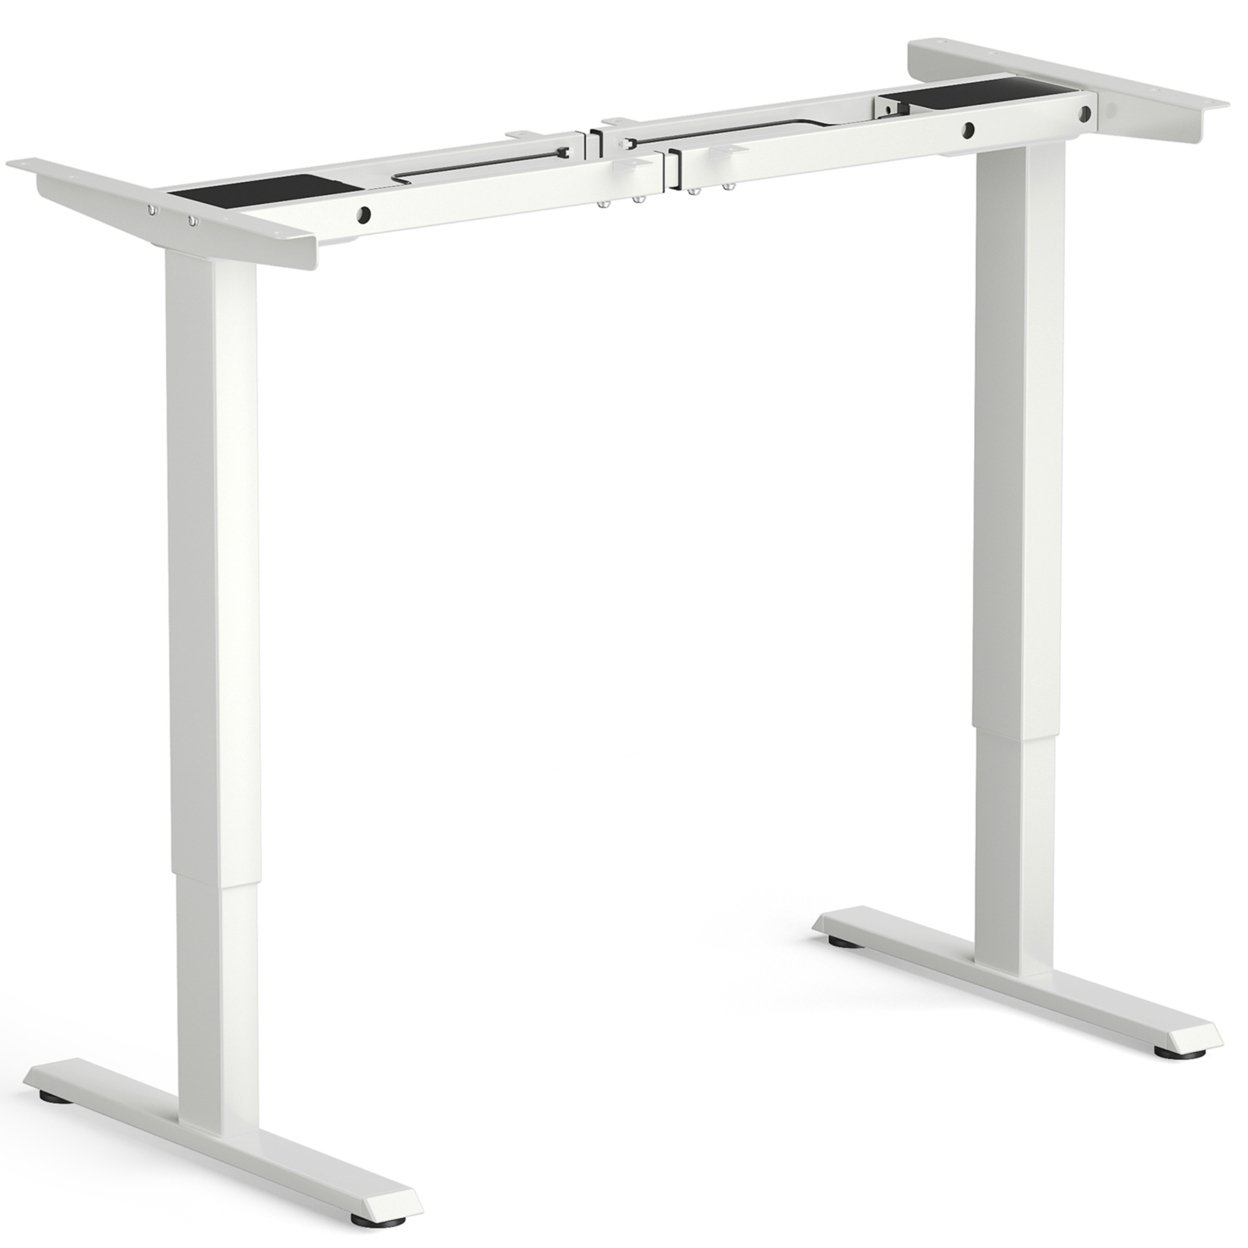 Dual-Motor Stand Up Desk Frame Workstation Base W/ Adjustable Width & Height - Grey